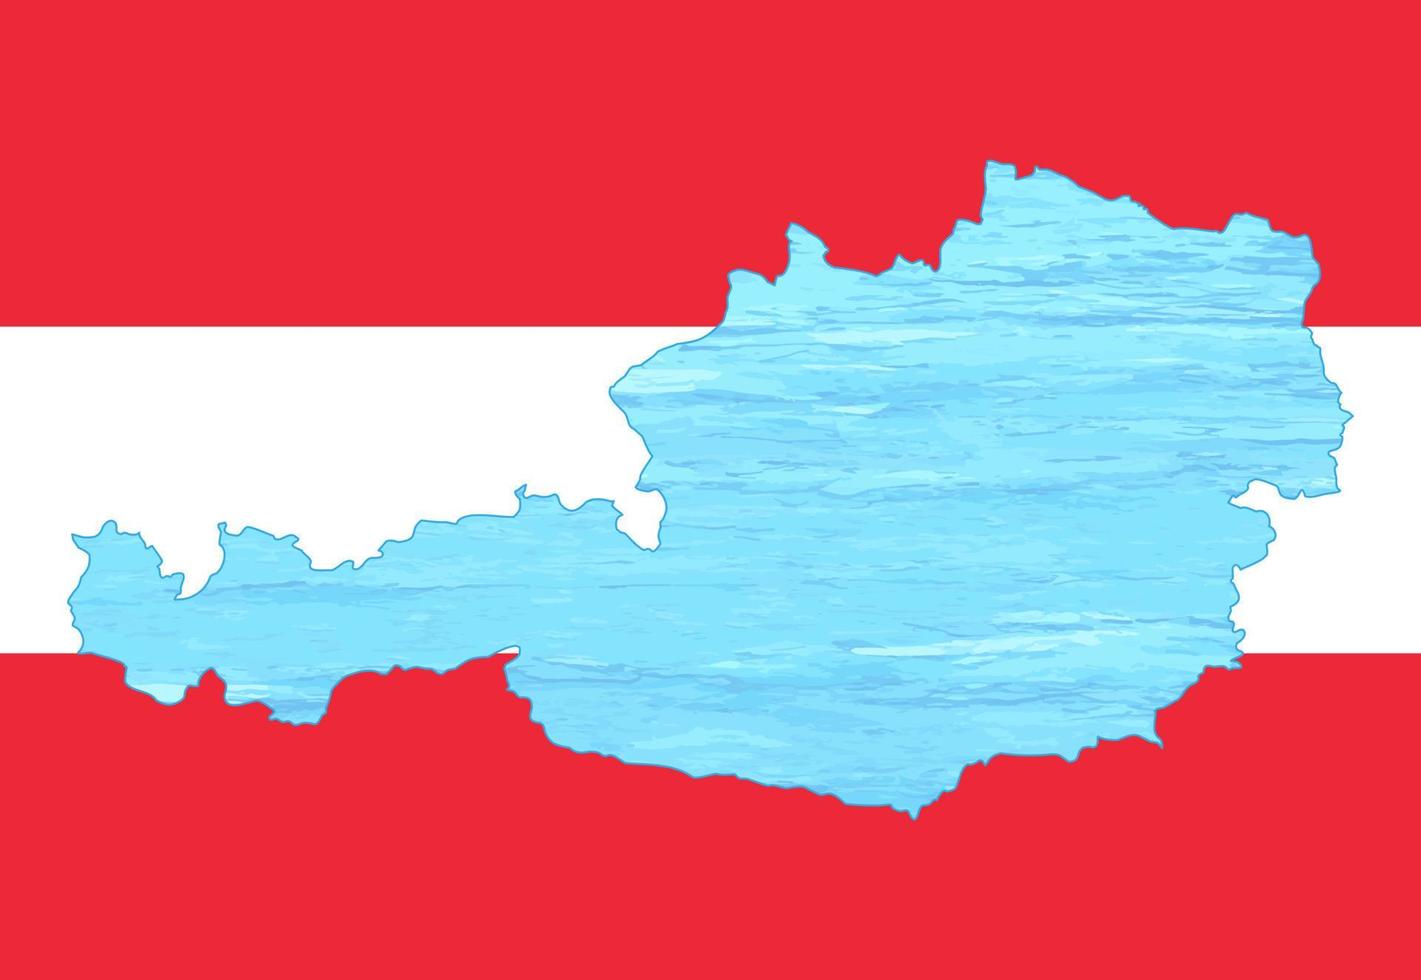 schets kaart van Oostenrijk ingeschreven in de nationaal vlag. ijs binnen de kaart. vector illustratie. energie crisis.